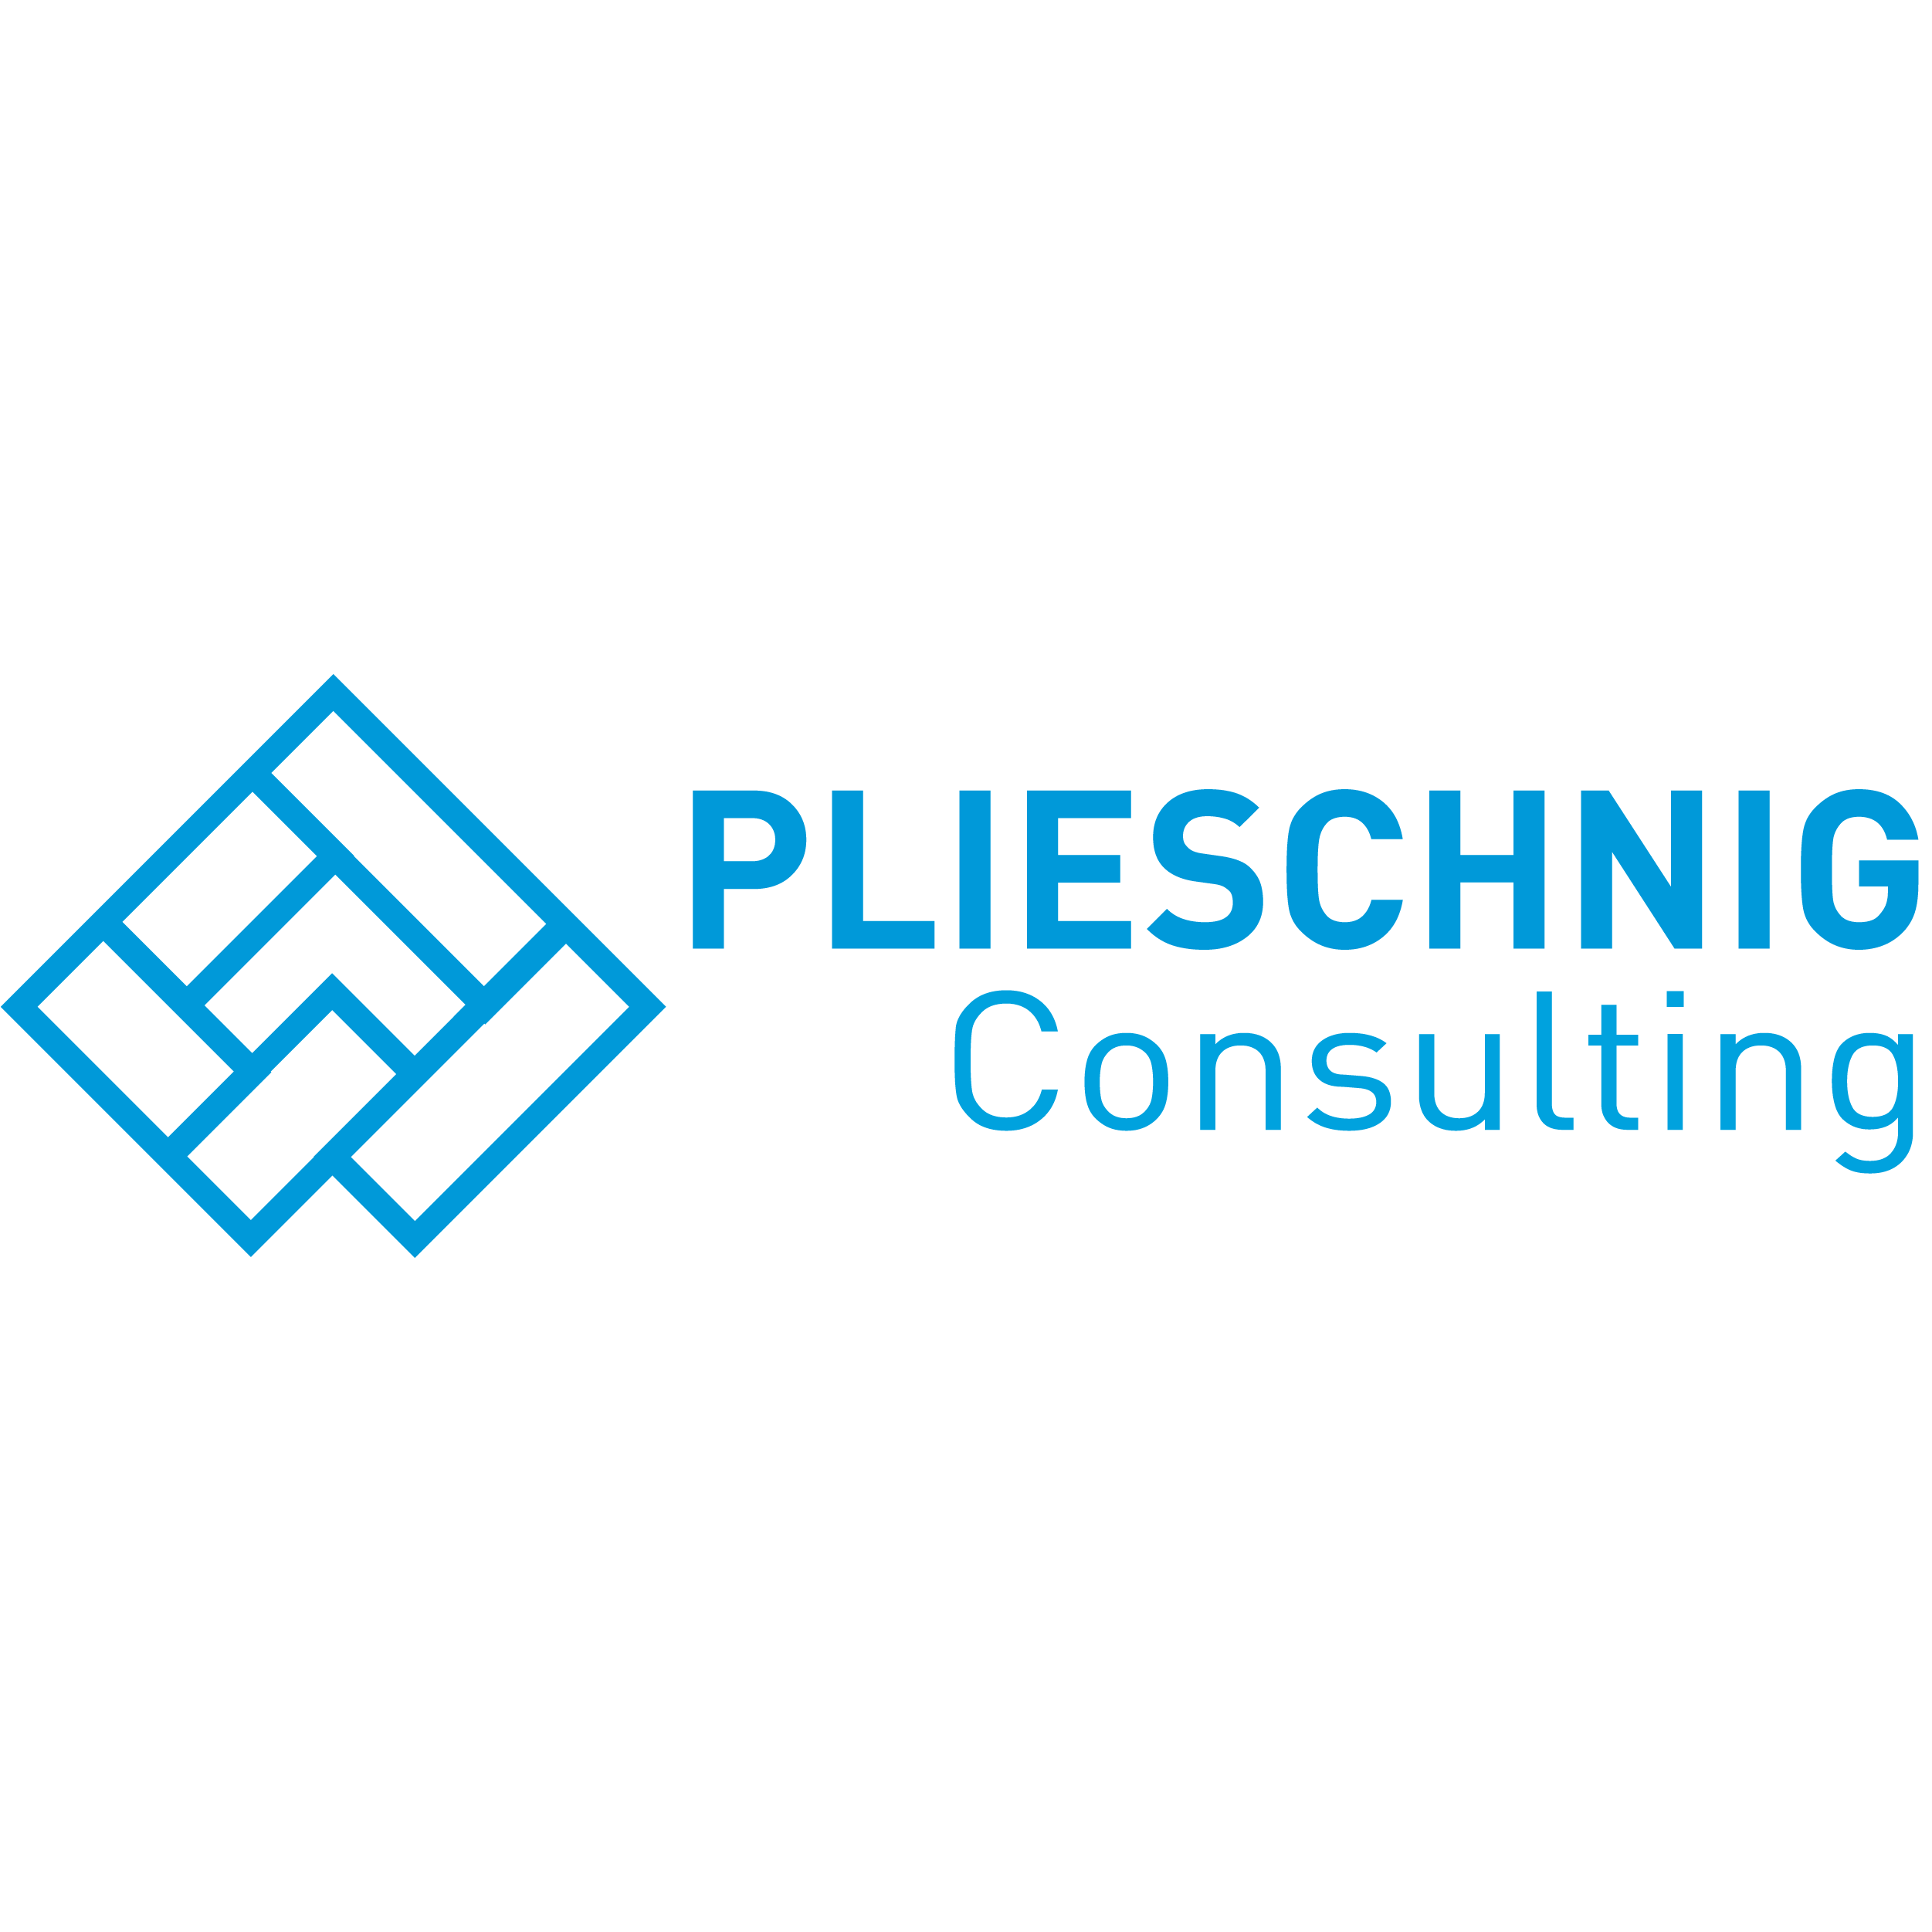 Plieschnig Consulting in 9300 Sankt Veit an der Glan Logo